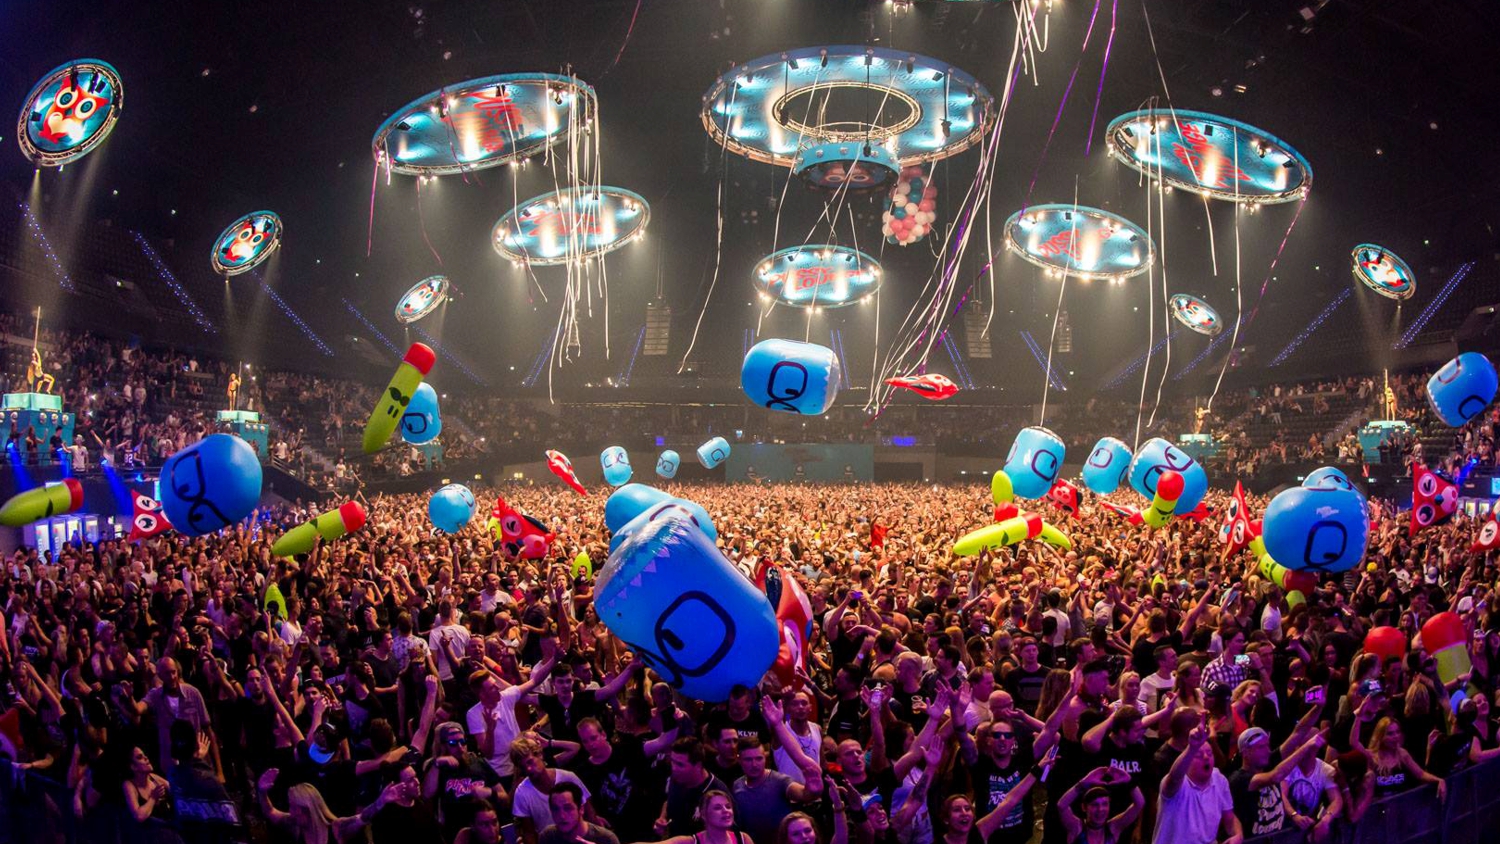 opblaasbare festival items en publieks ballen en inflatables - crowd balls